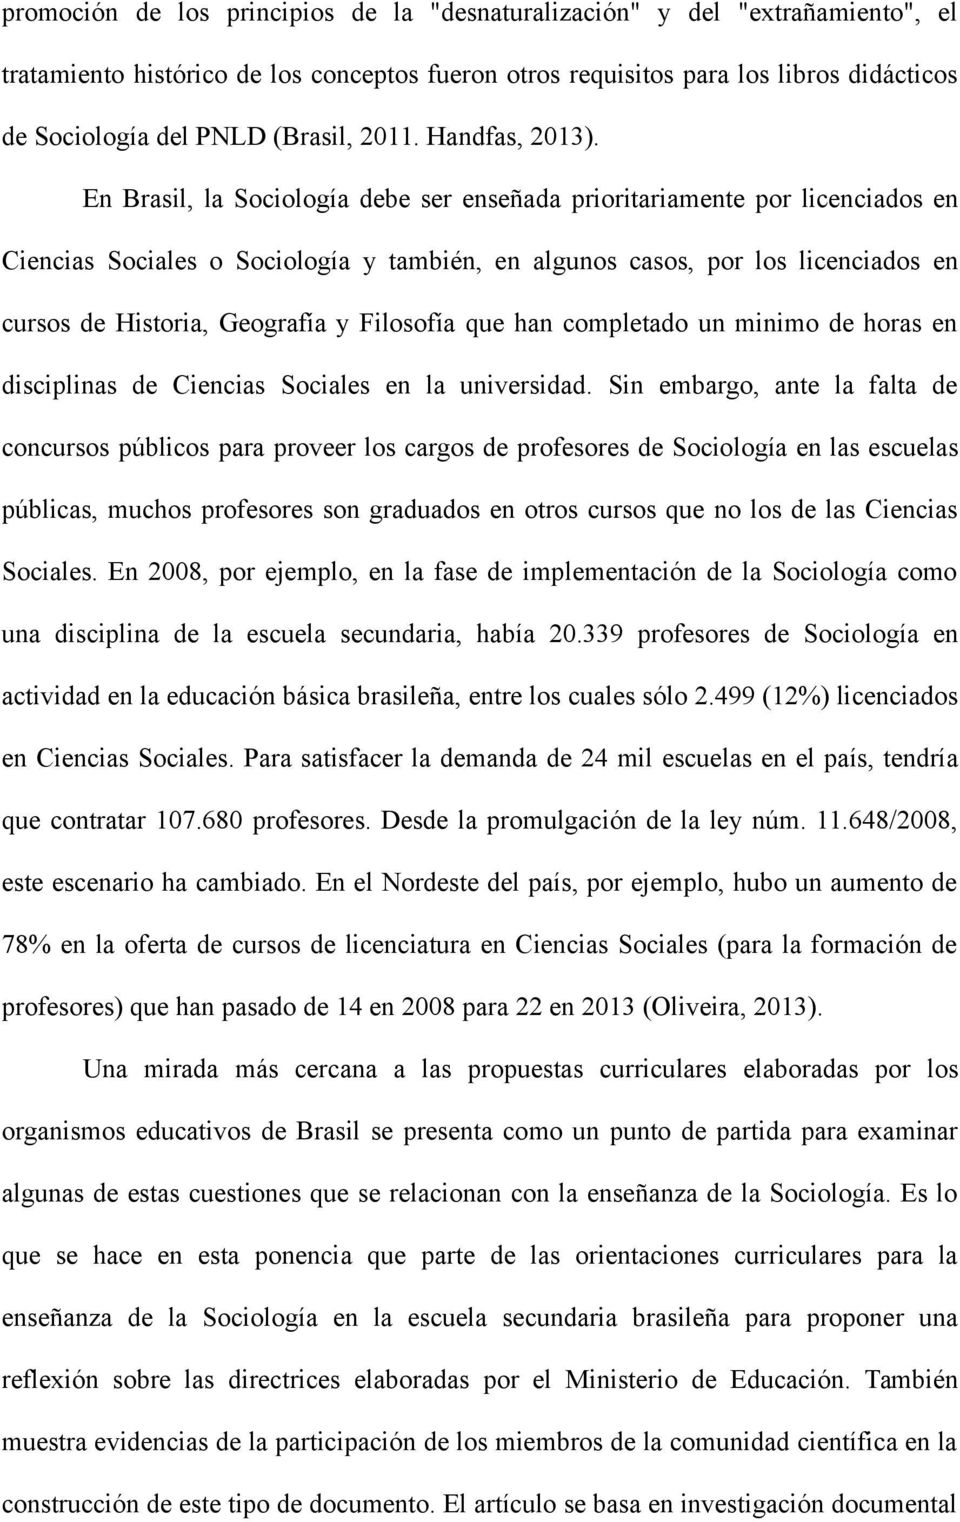 En Brasil, la Sociología debe ser enseñada prioritariamente por licenciados en Ciencias Sociales o Sociología y también, en algunos casos, por los licenciados en cursos de Historia, Geografía y